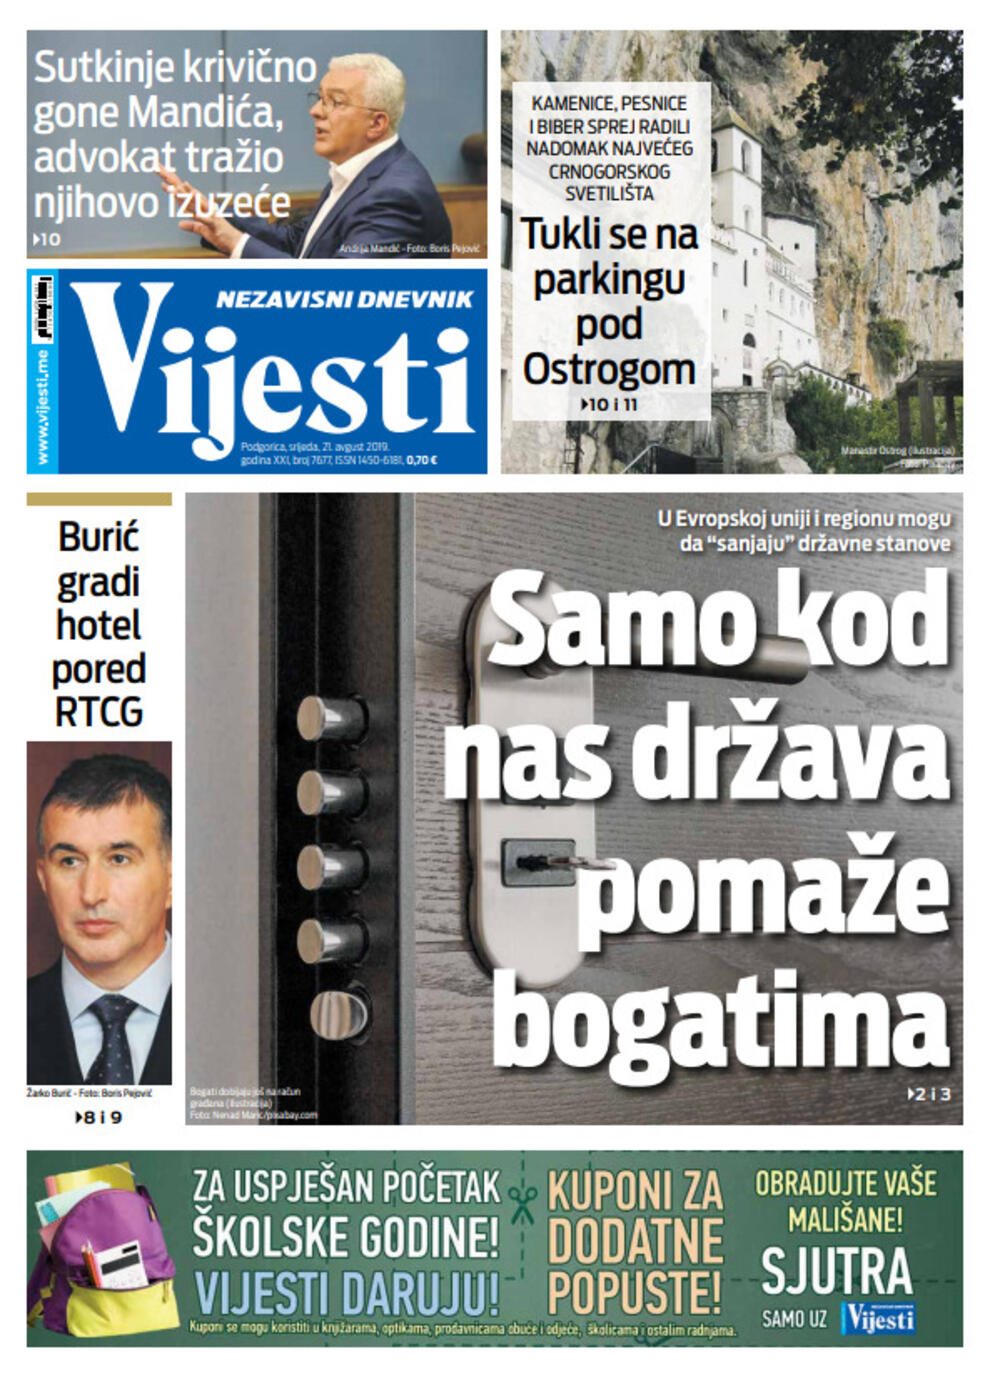 Naslovna strana "Vijesti" za 21. avgust, Foto: Vijesti